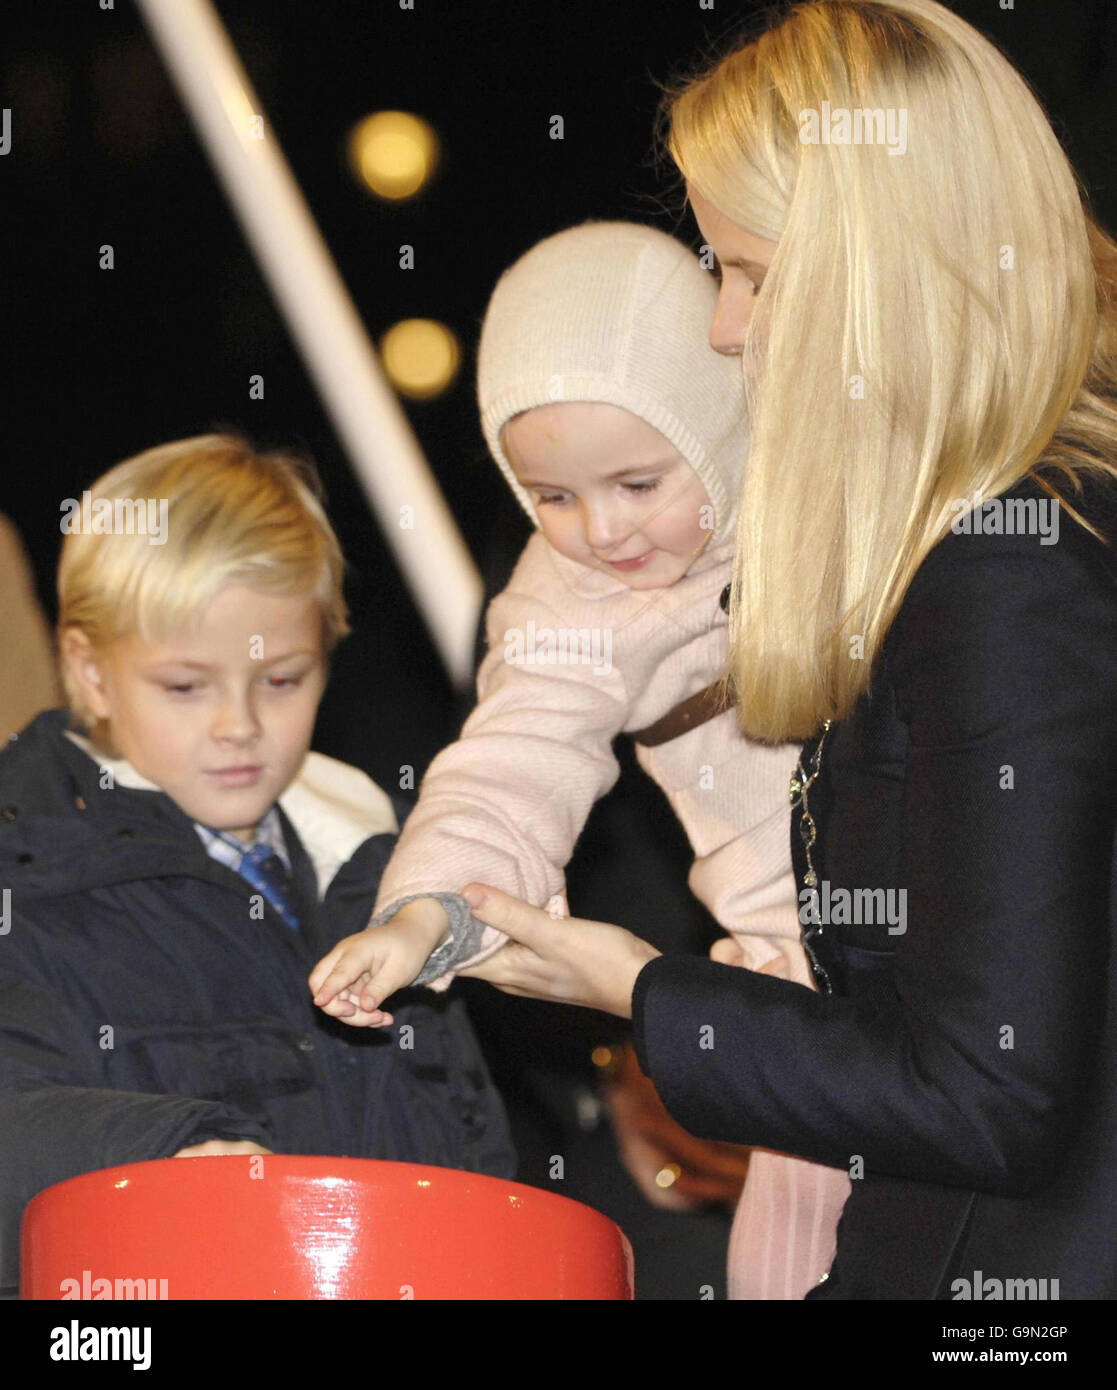 Visto por su hermano mayor, el príncipe Sverre Magnus, a la izquierda, la princesa Ingrid Alexandra de Noruega, de 2 años, es ayudado por su madre, la princesa de la corona Mette-Marit de Noruega, para encender las luces del árbol de Navidad en Trafalgar Square en Londres. Foto de stock